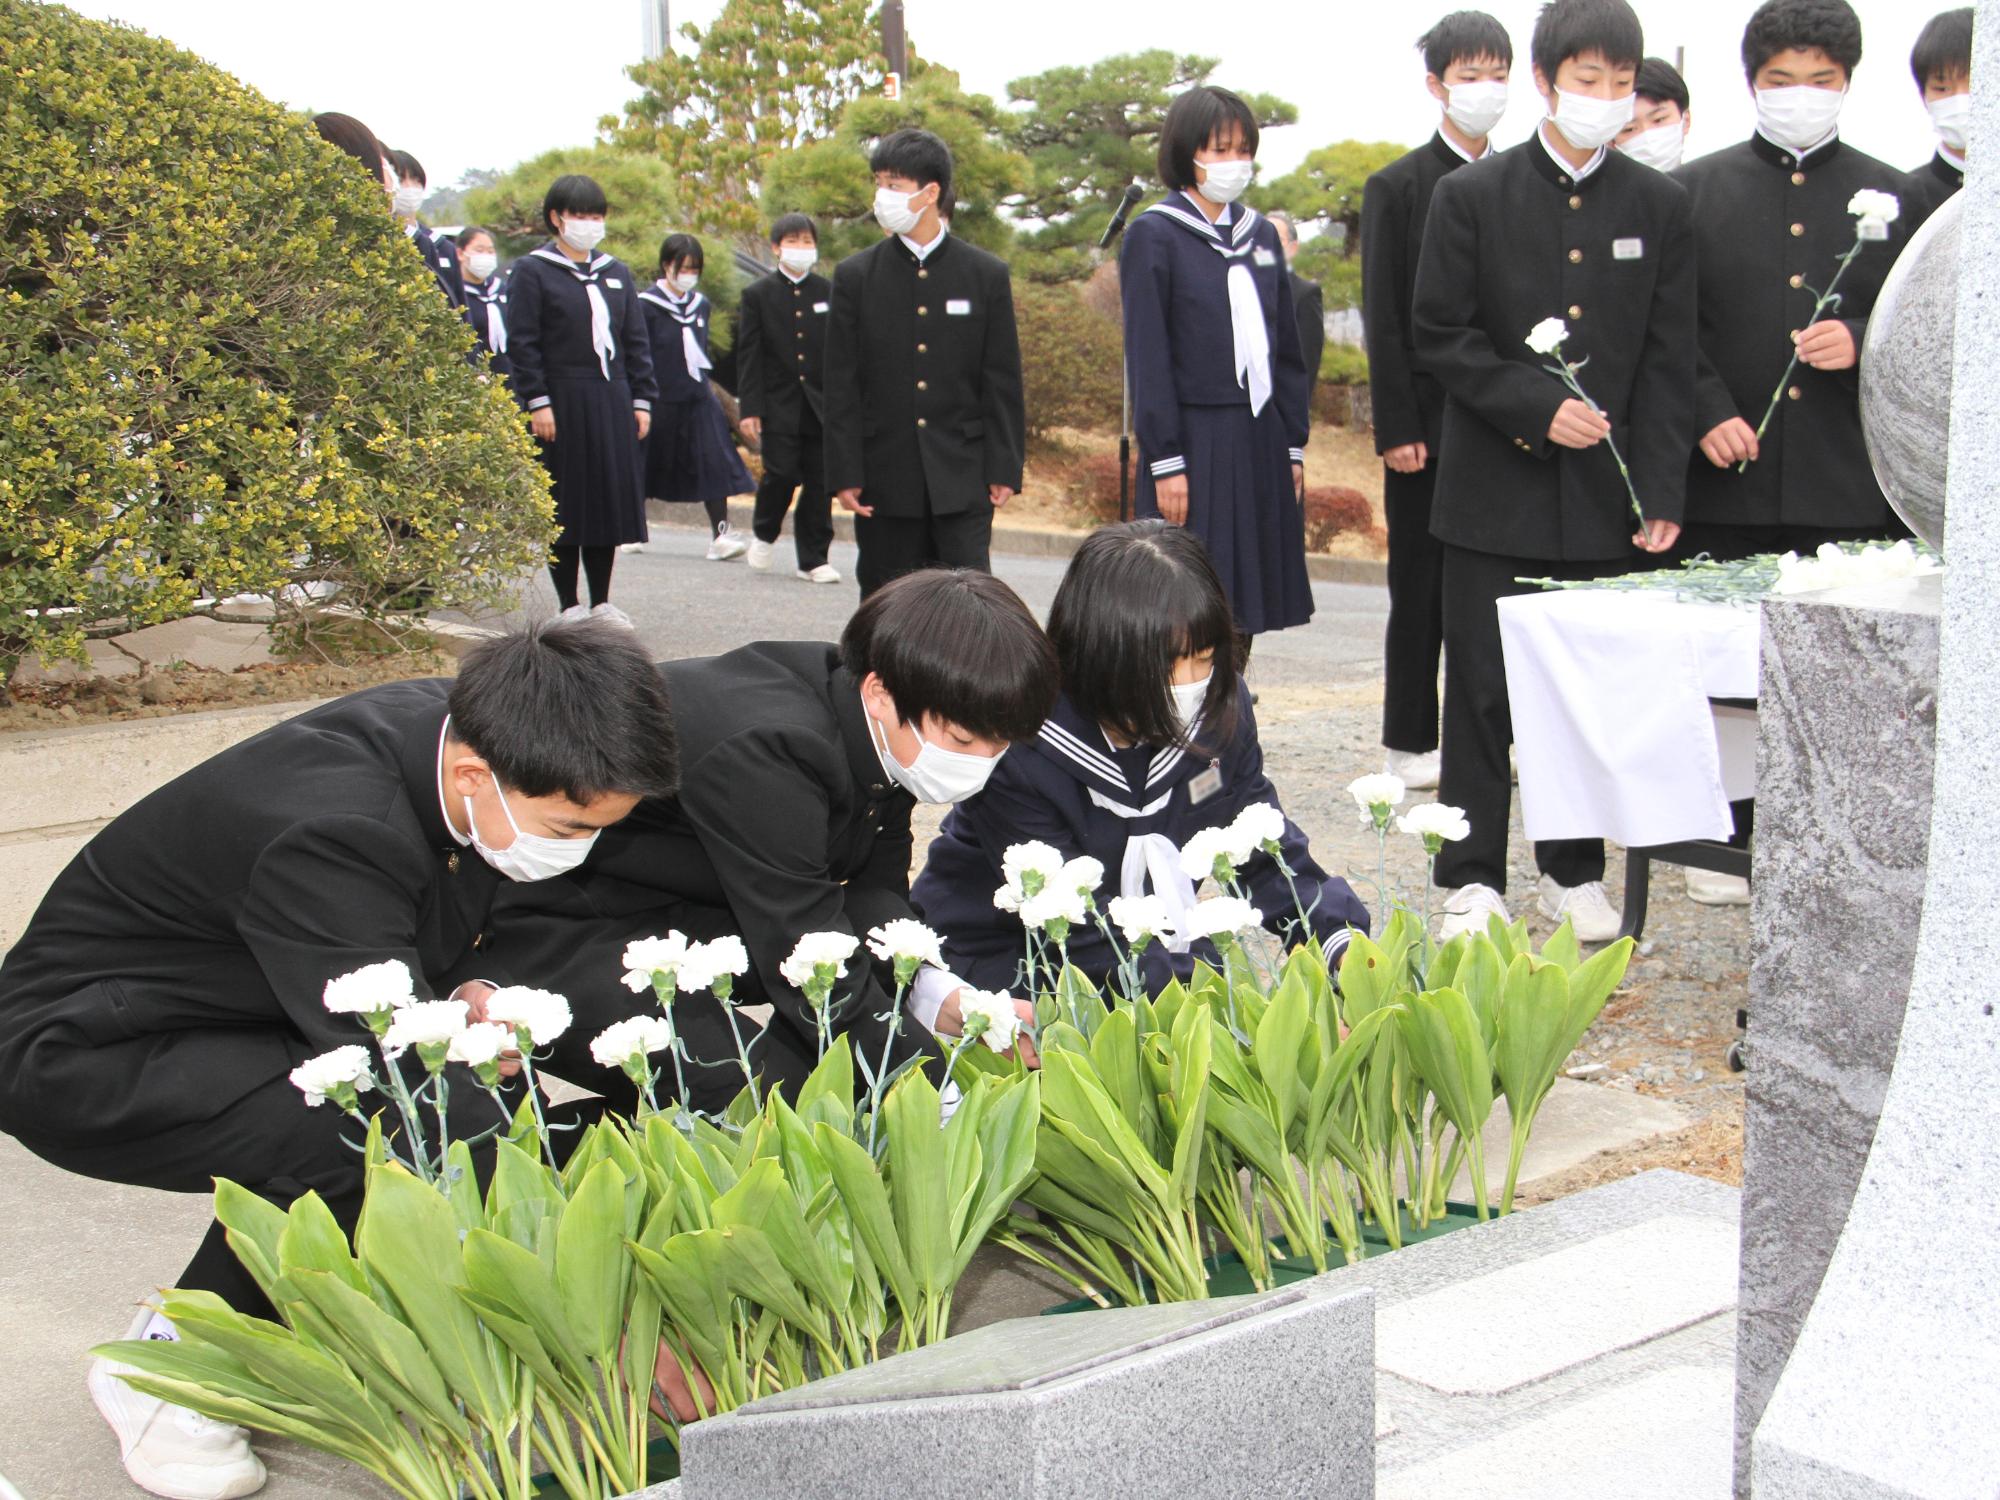 磯部中学校慰霊式で生徒らが献花をする様子